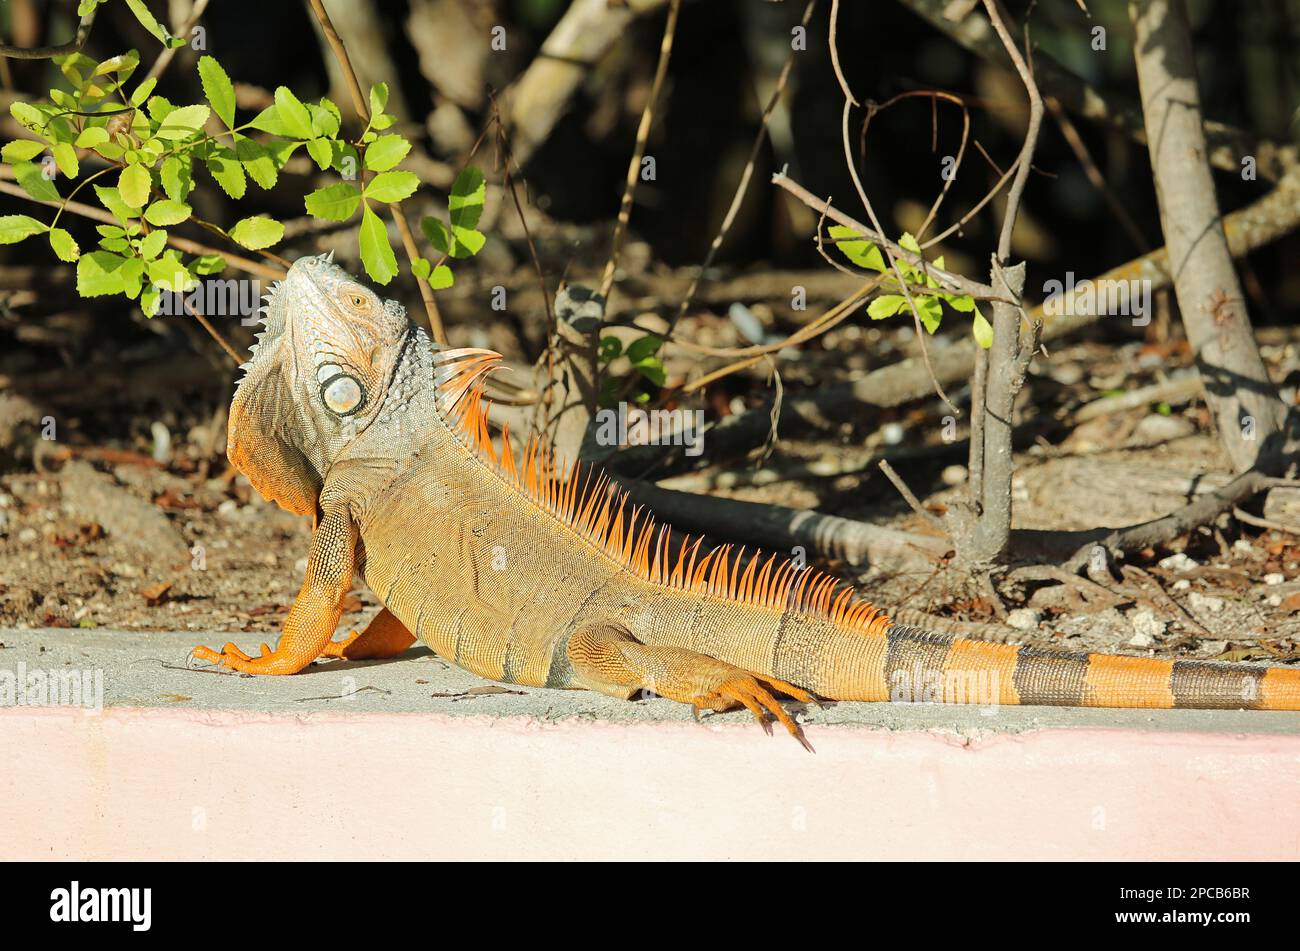 Iguana basking - Florida Stock Photo